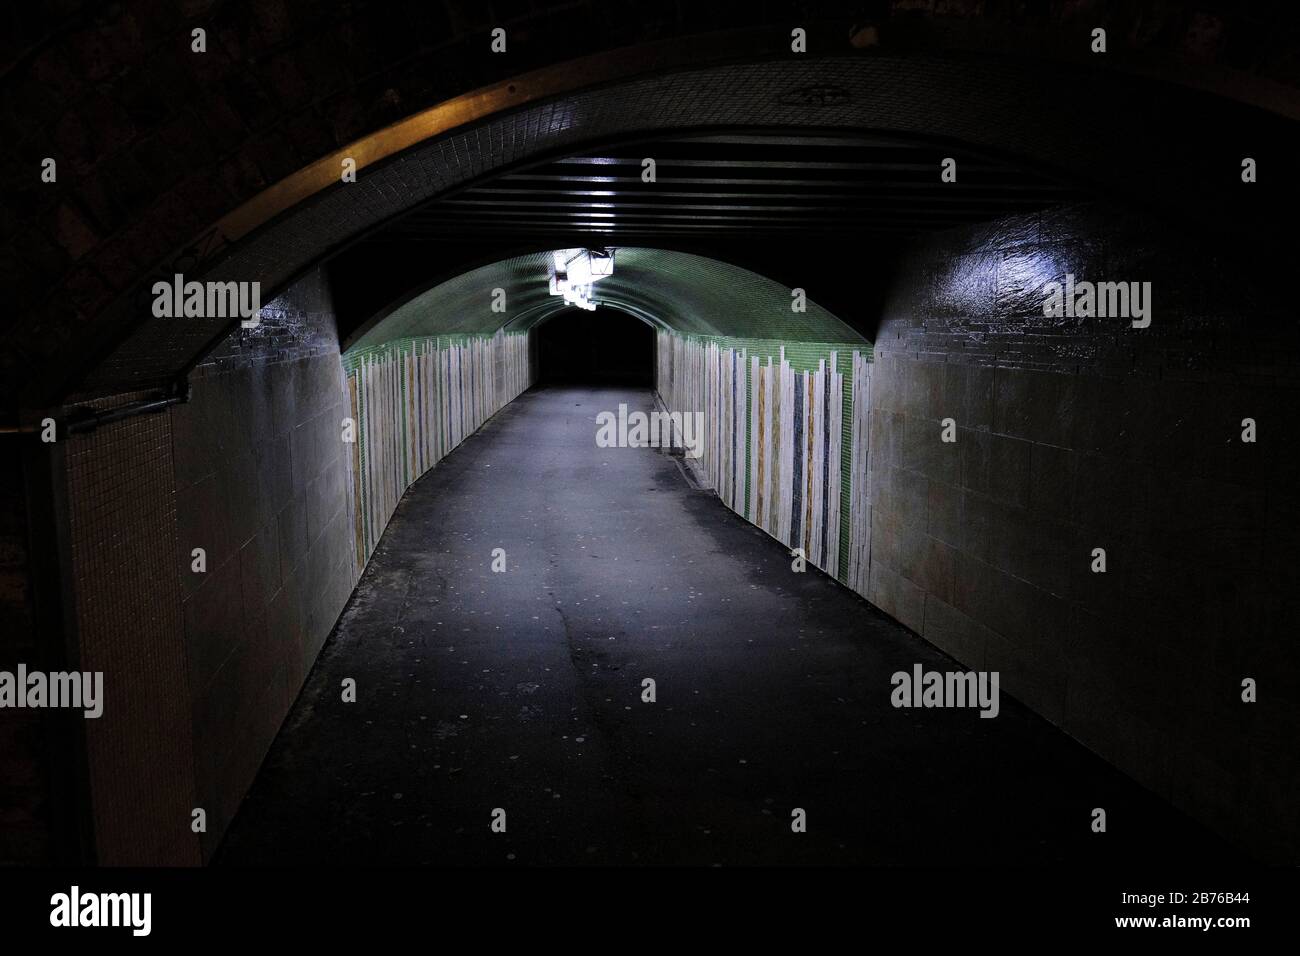 Paso subterráneo peatonal mal iluminado por la noche, ambiente urbano intimidante, puente Putney, londres Foto de stock